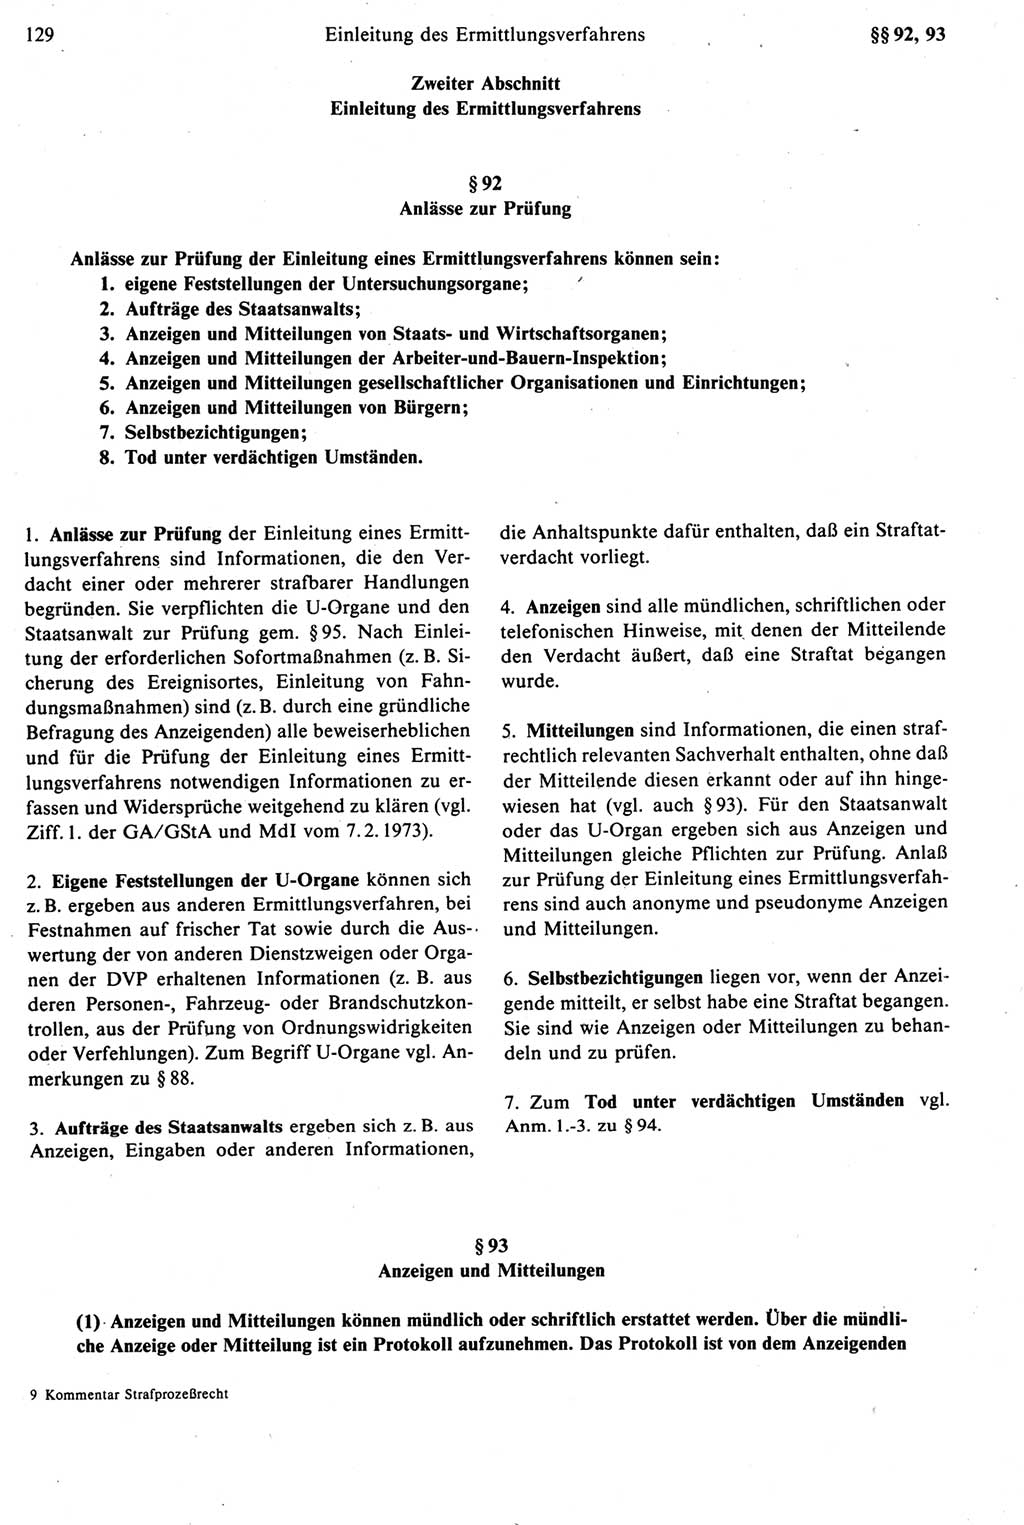 Strafprozeßrecht der DDR [Deutsche Demokratische Republik], Kommentar zur Strafprozeßordnung (StPO) 1987, Seite 129 (Strafprozeßr. DDR Komm. StPO 1987, S. 129)